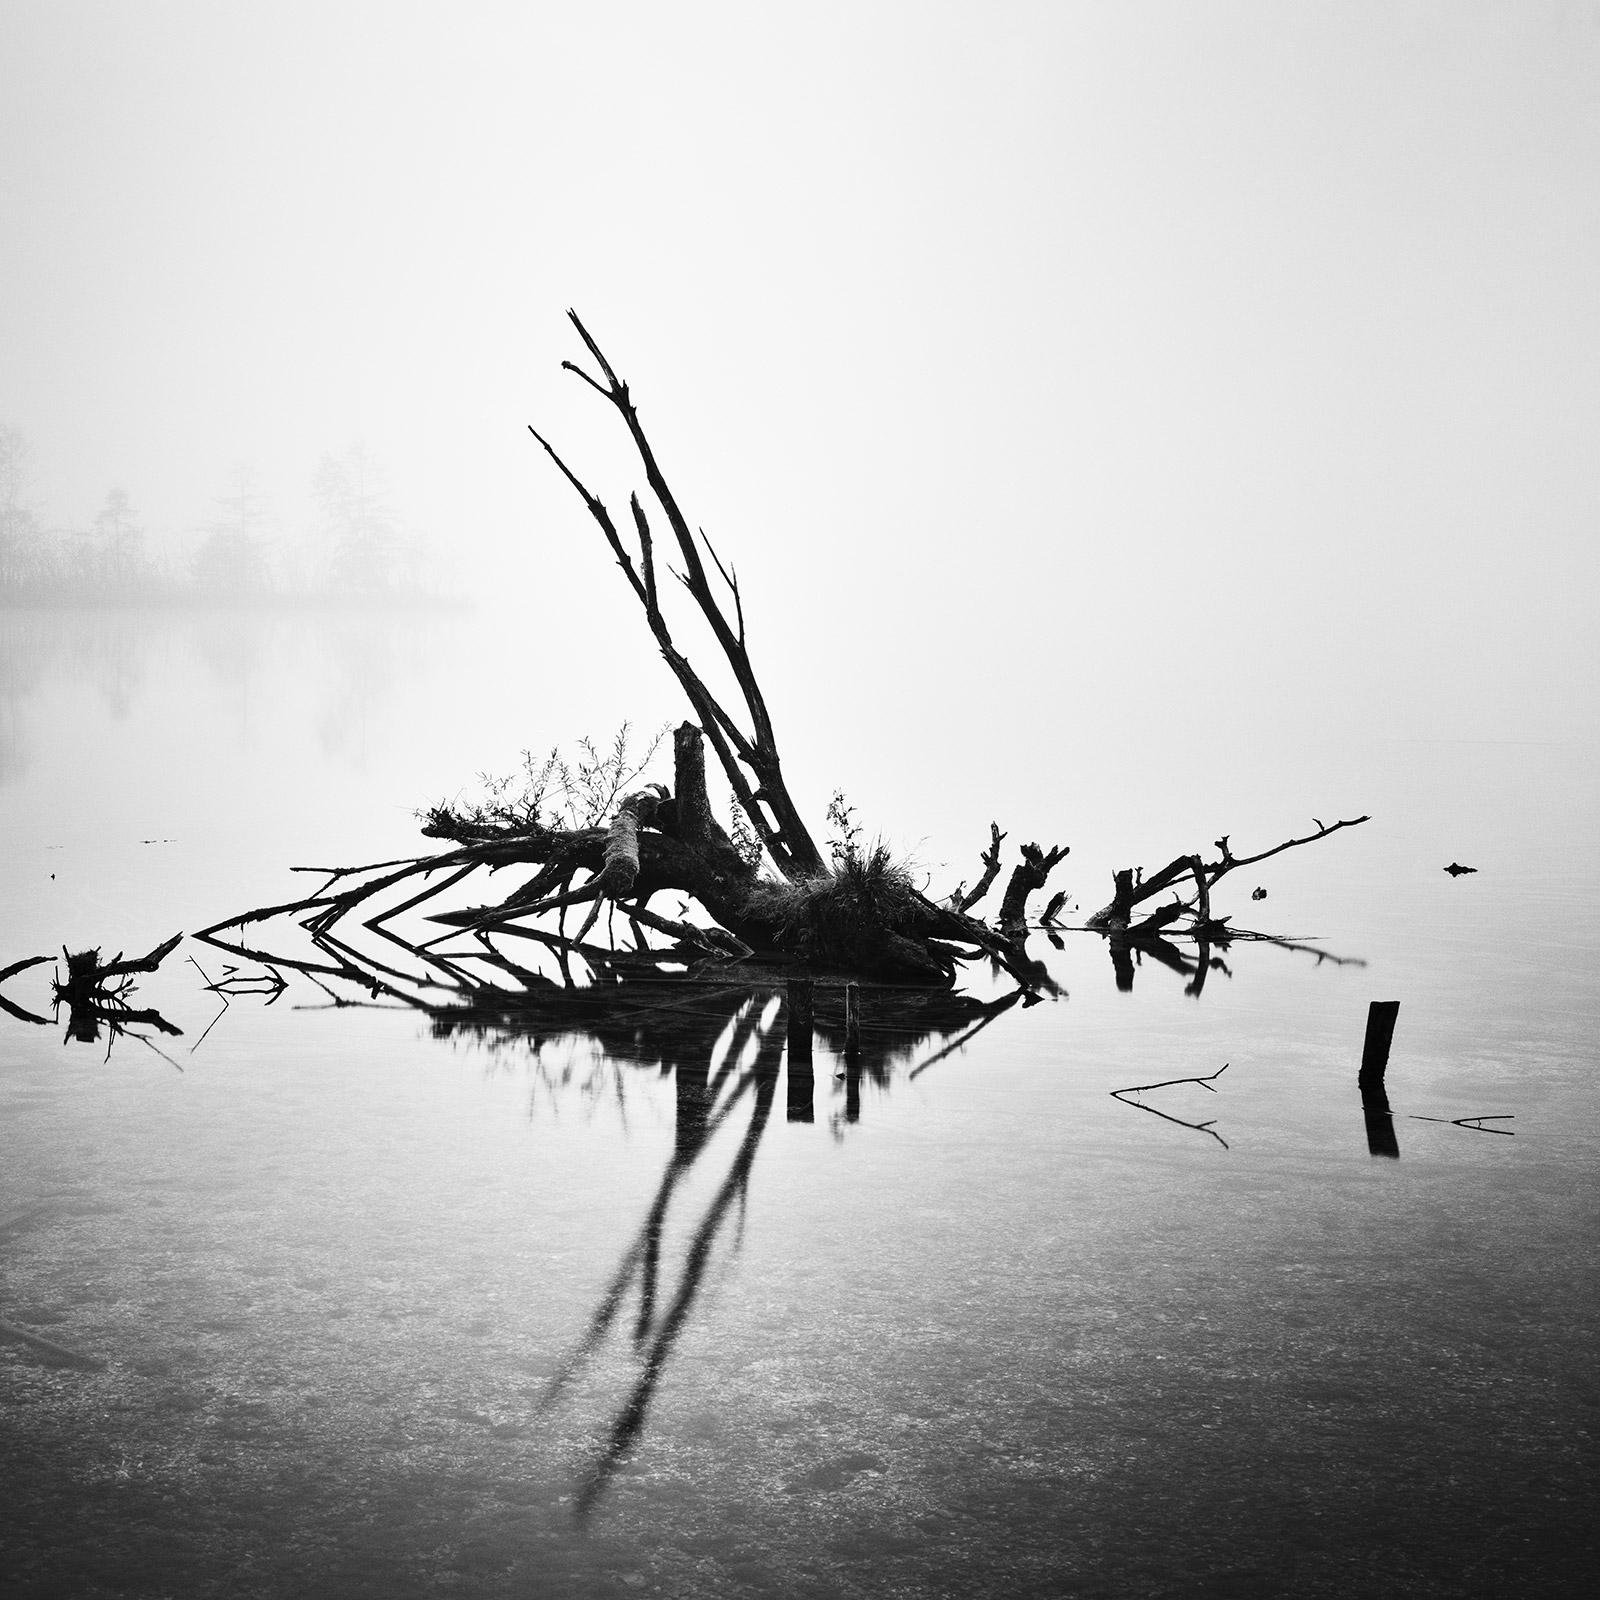 Fallen Tree, Almsee, Austria, black and white photography, fine art landscape